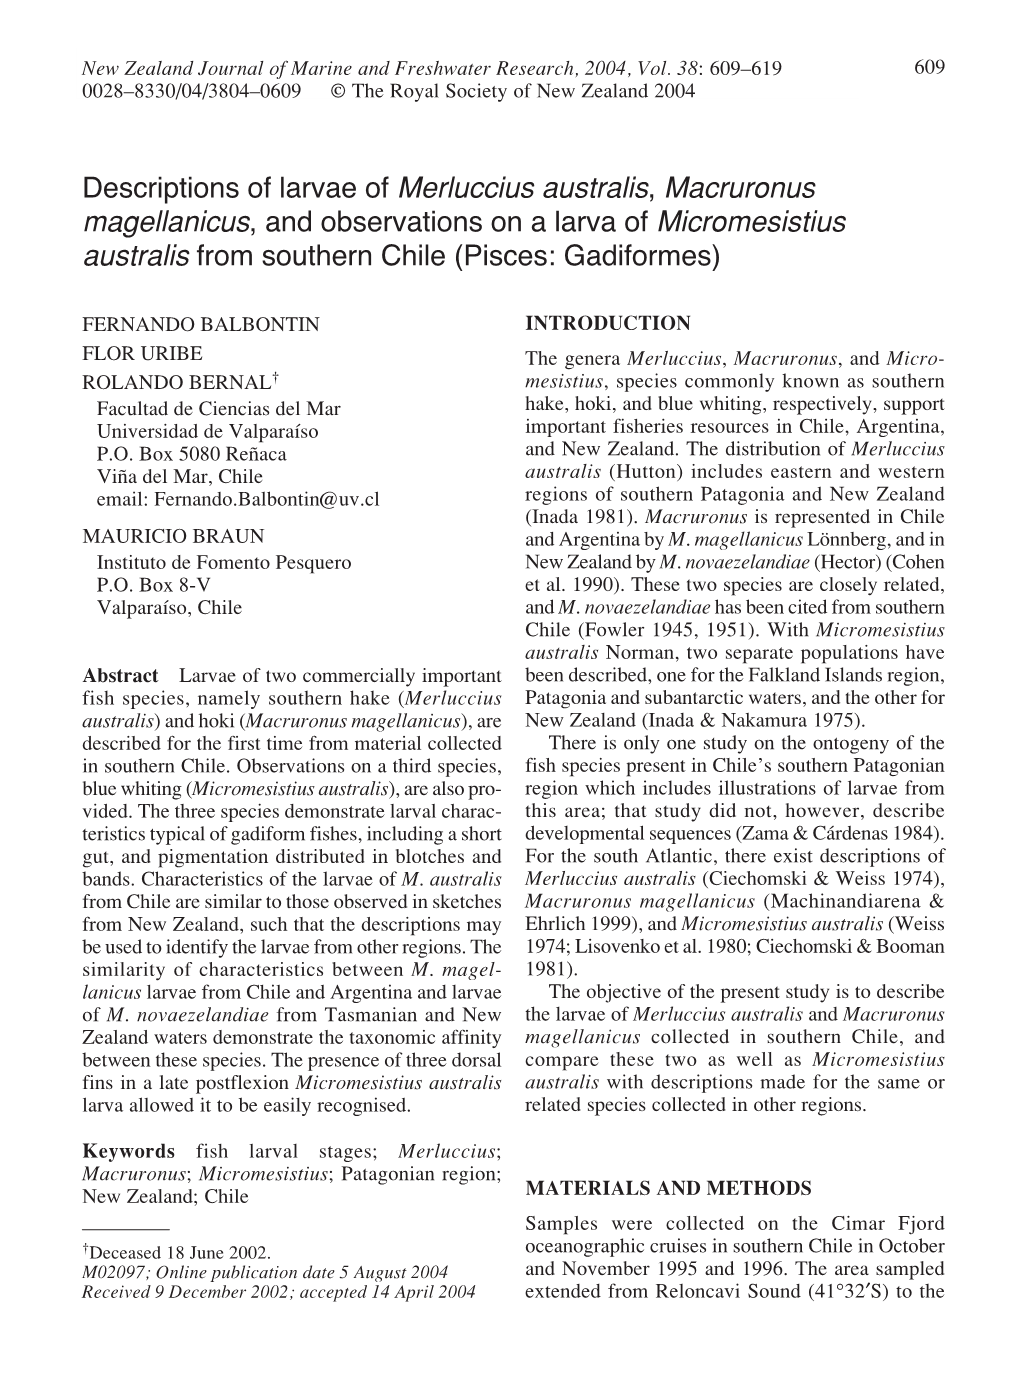 Descriptions of Larvae of Merluccius Australis, Macruronus Magellanicus, and Observations on a Larva of Micromesistius Australis